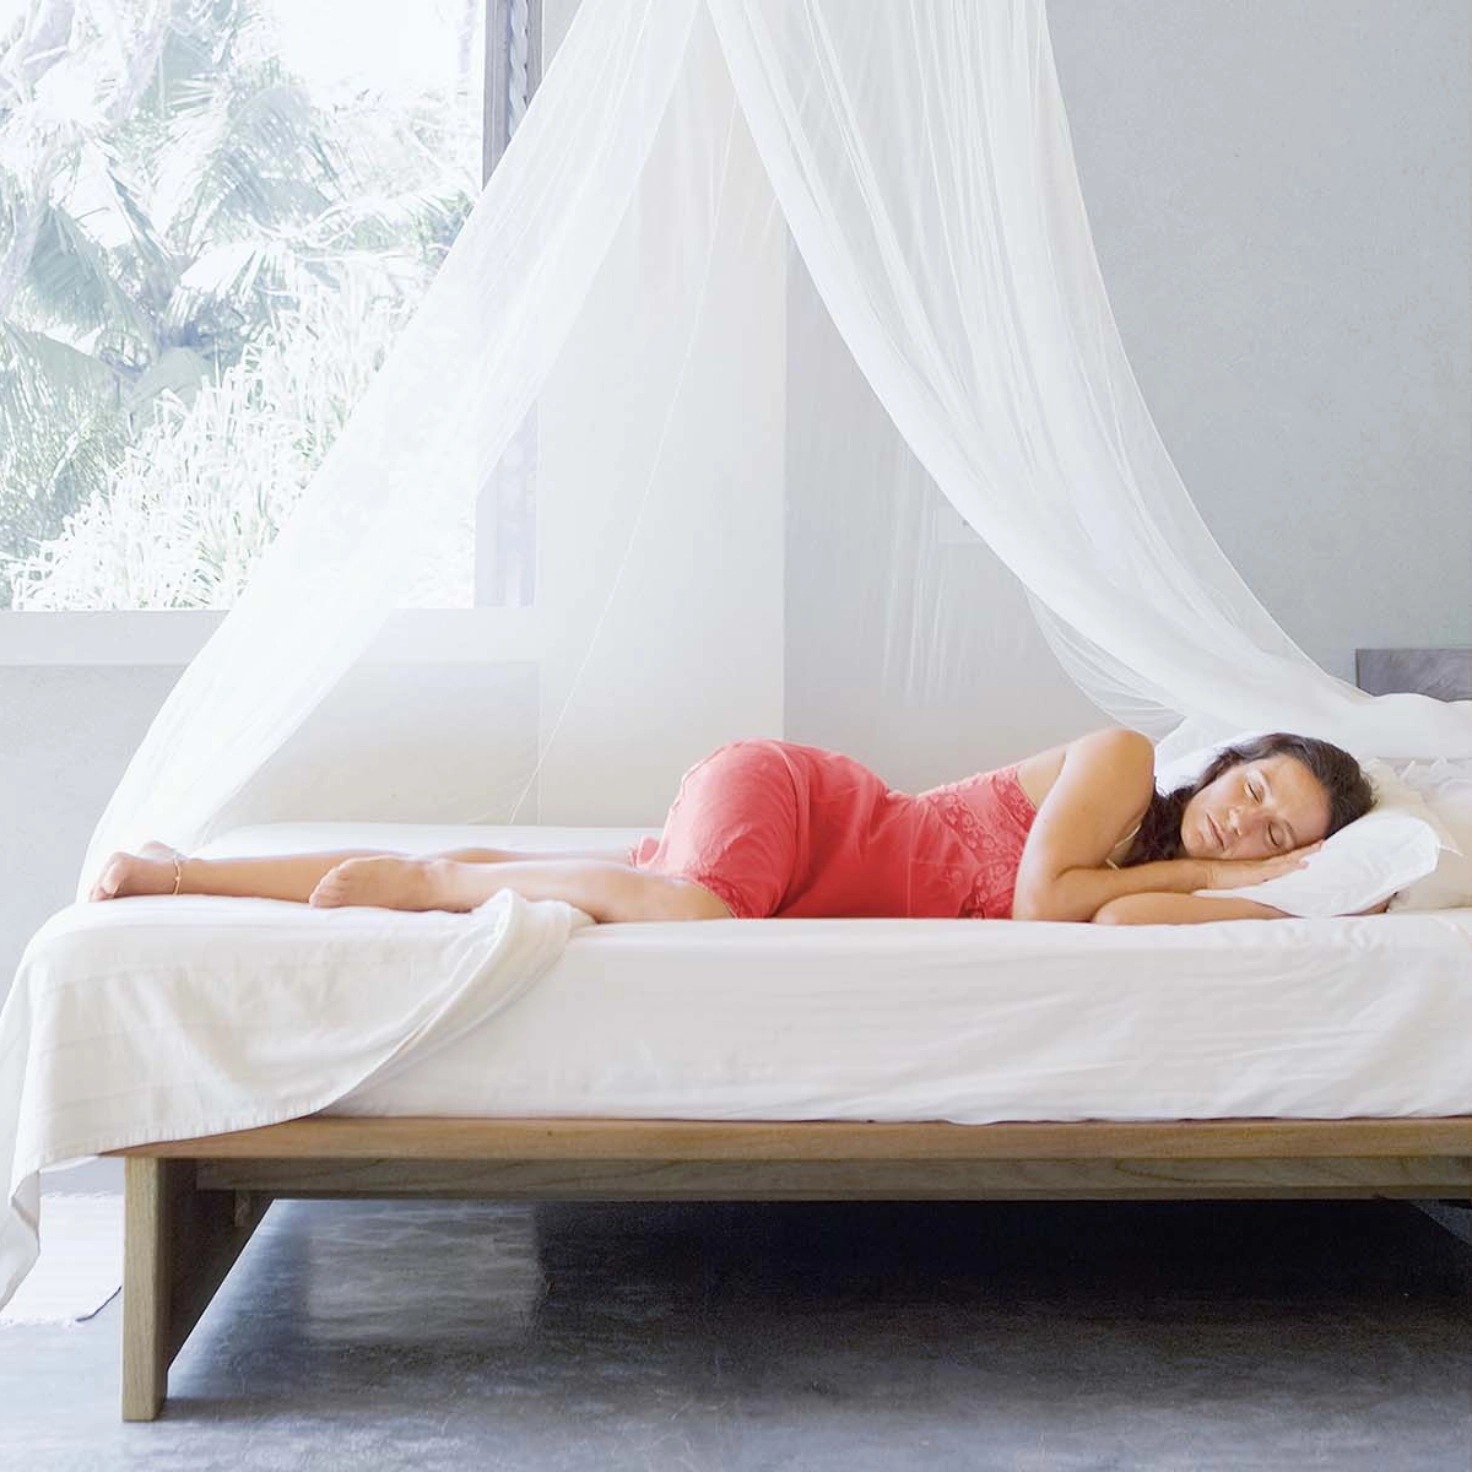 Une femme dort sous une moustiquaire en été.